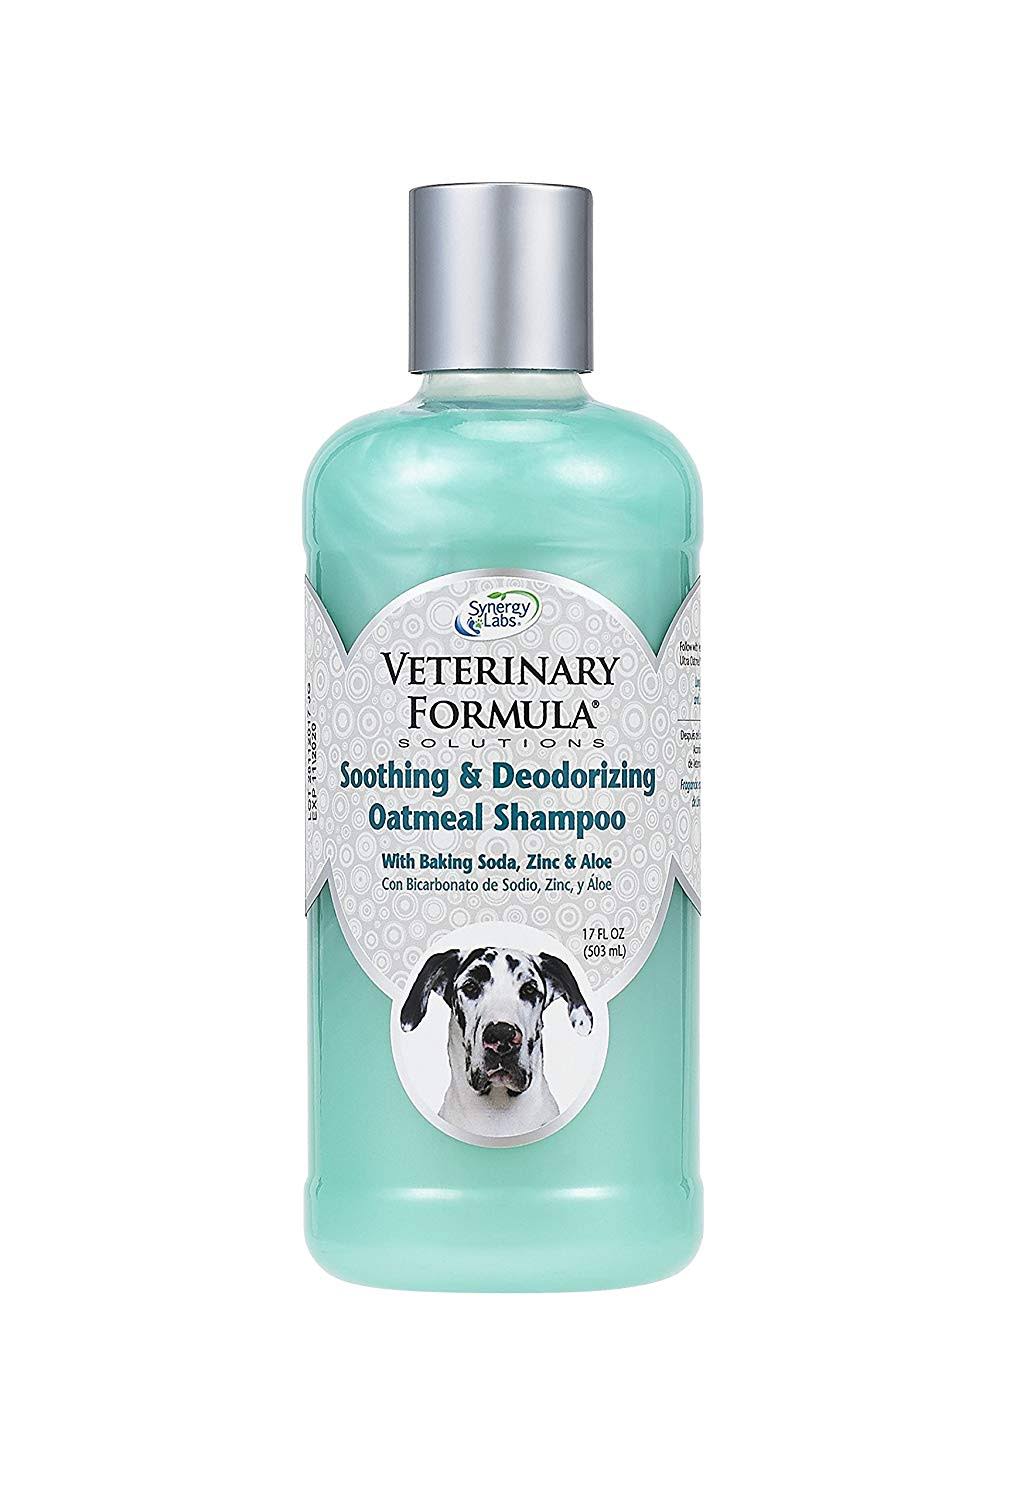 SynergyLabs Veterinary Formula Soothing and Deodorizing Shampoo - Oatmeal, Baking Soda, Zinc and Aloe Vera, 17oz